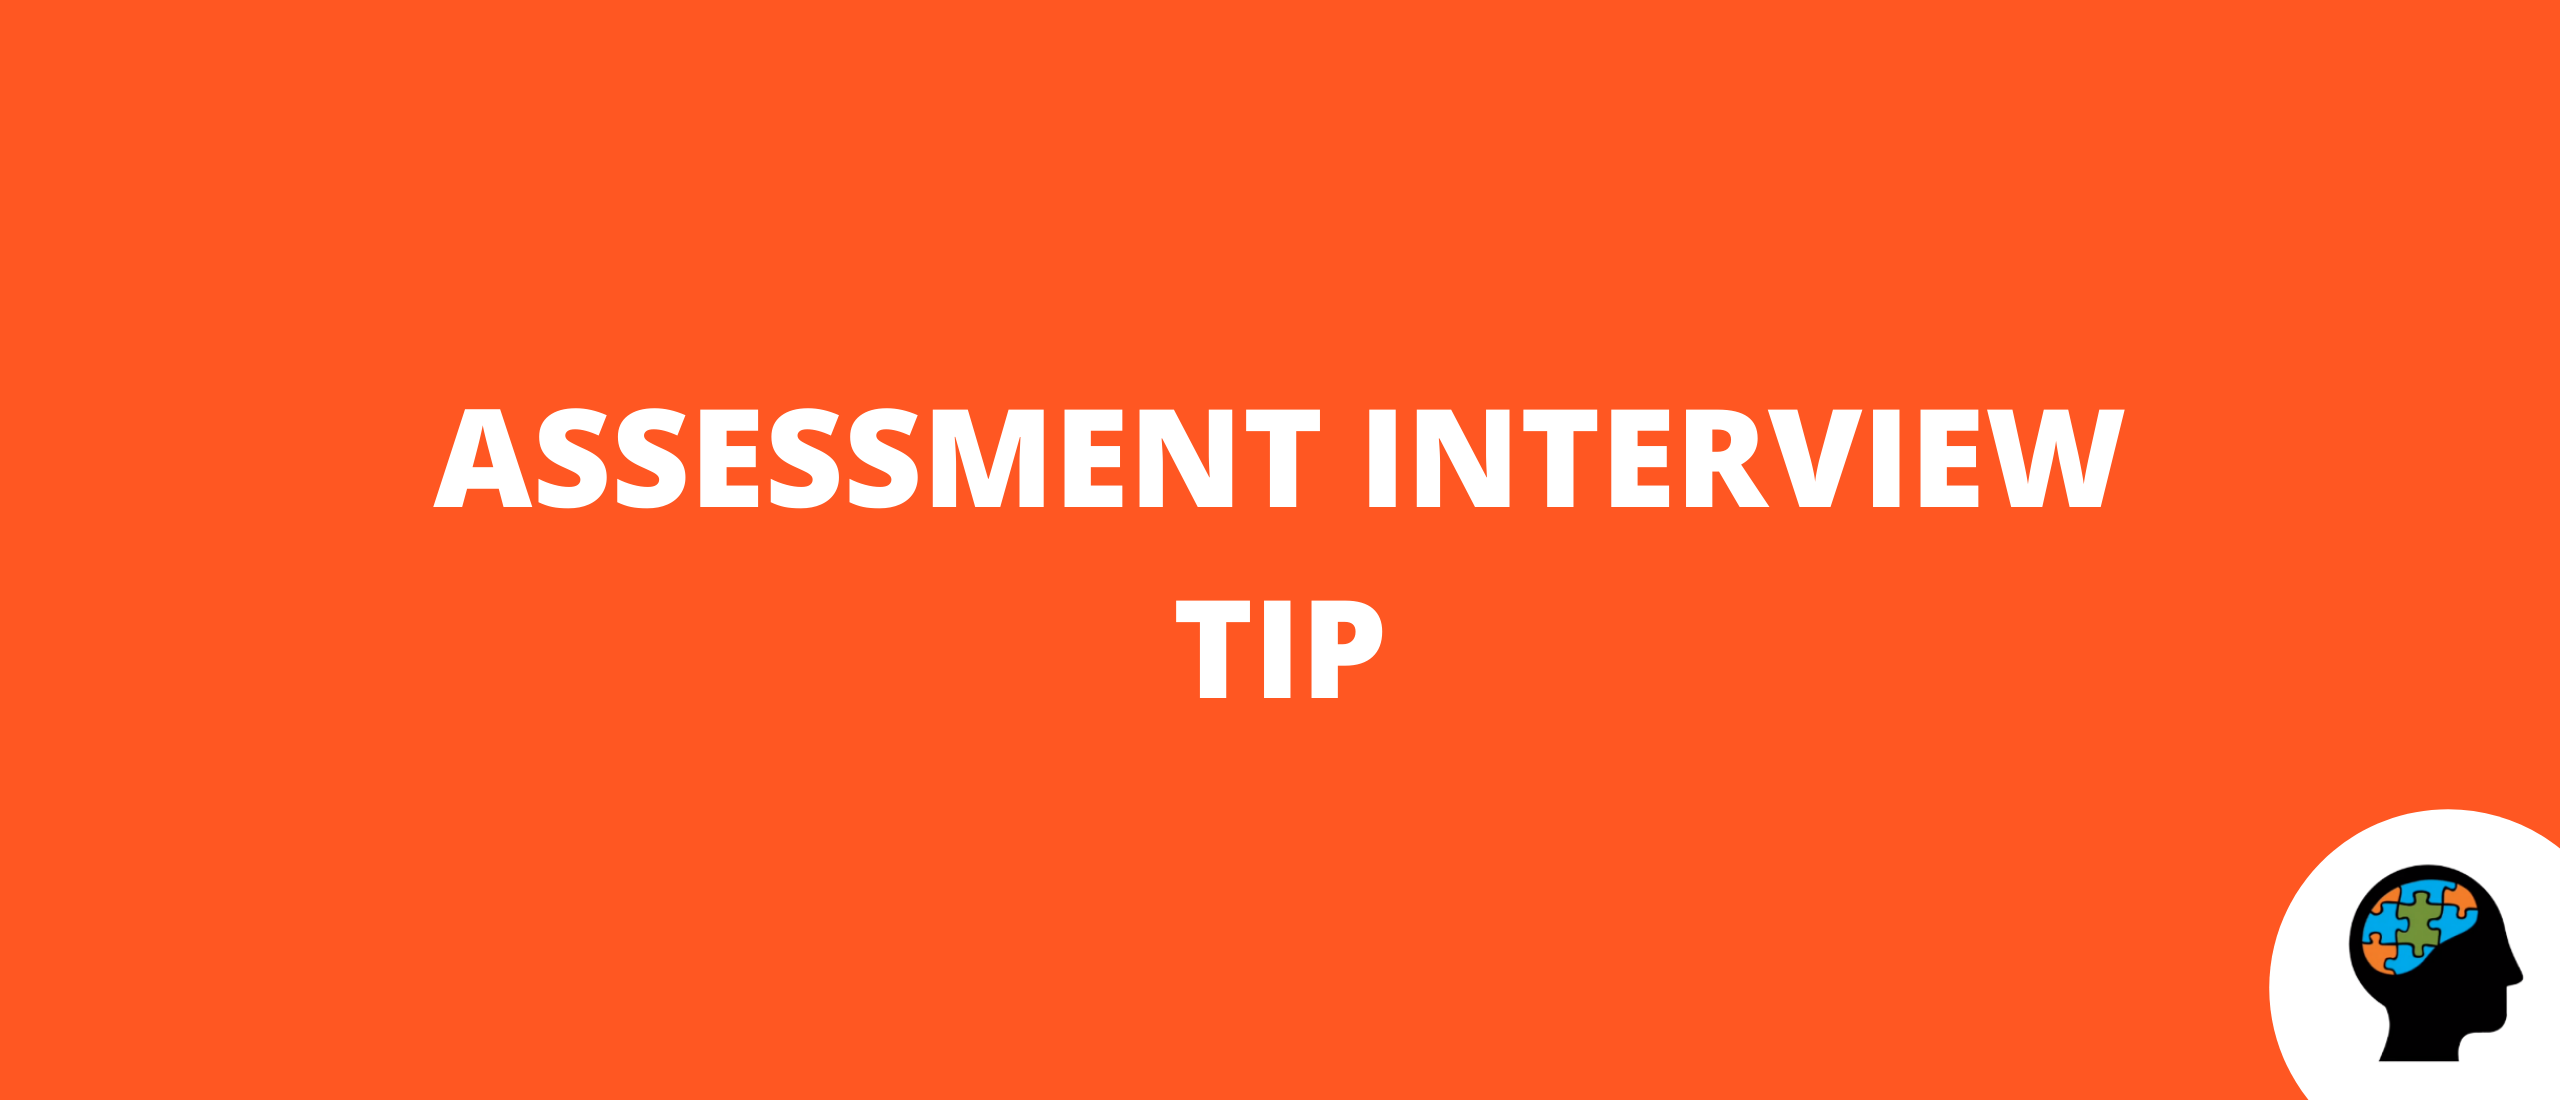 Assessment interview tip